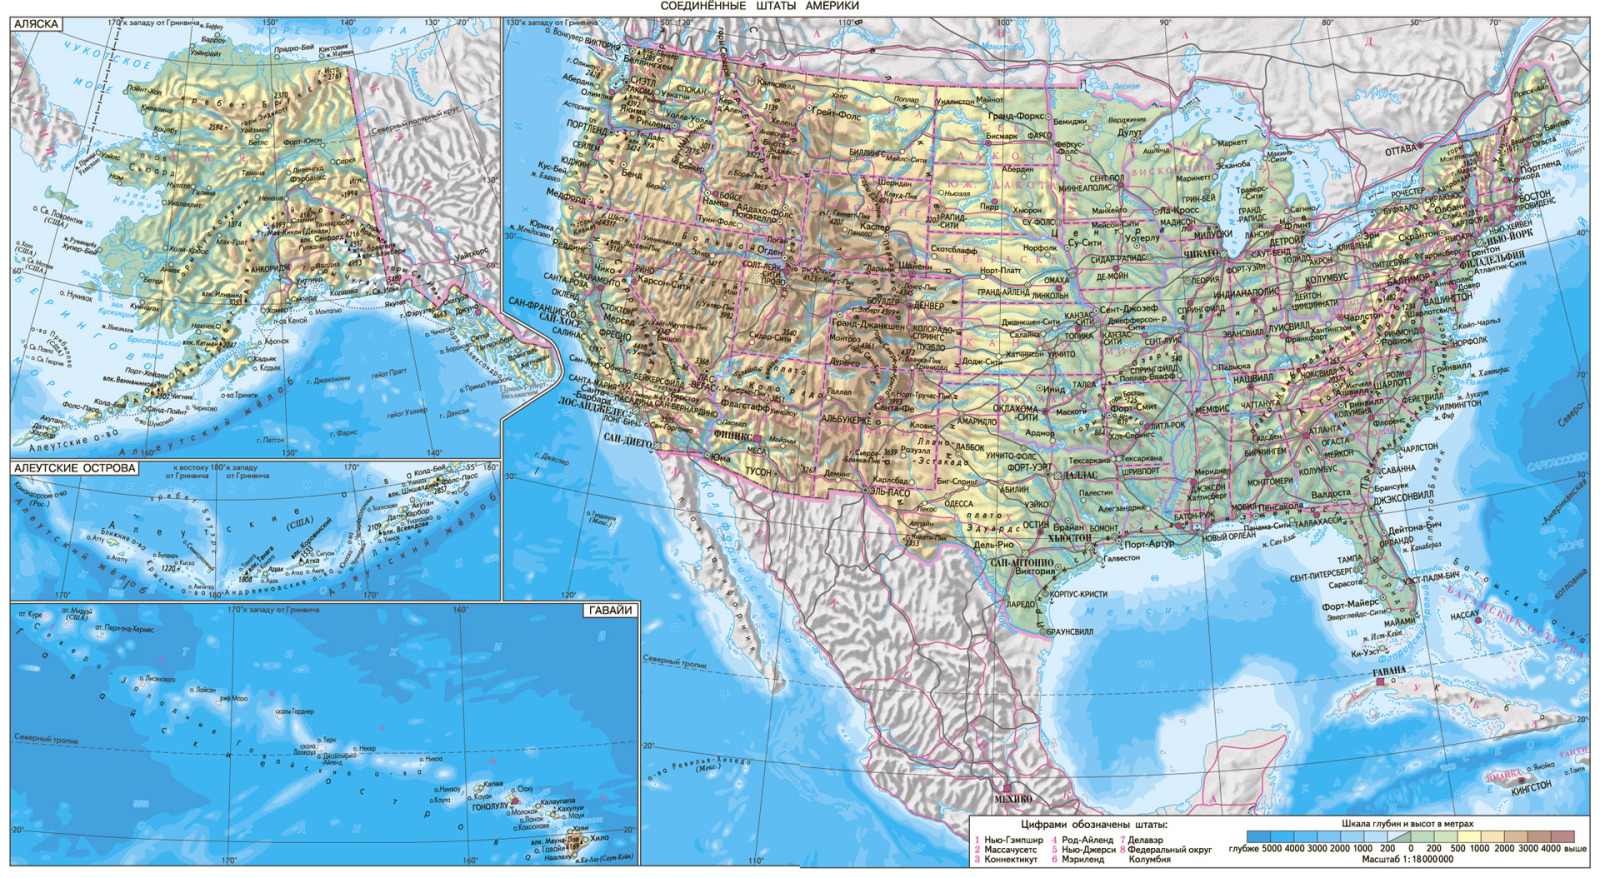 Аляска на карте Америки